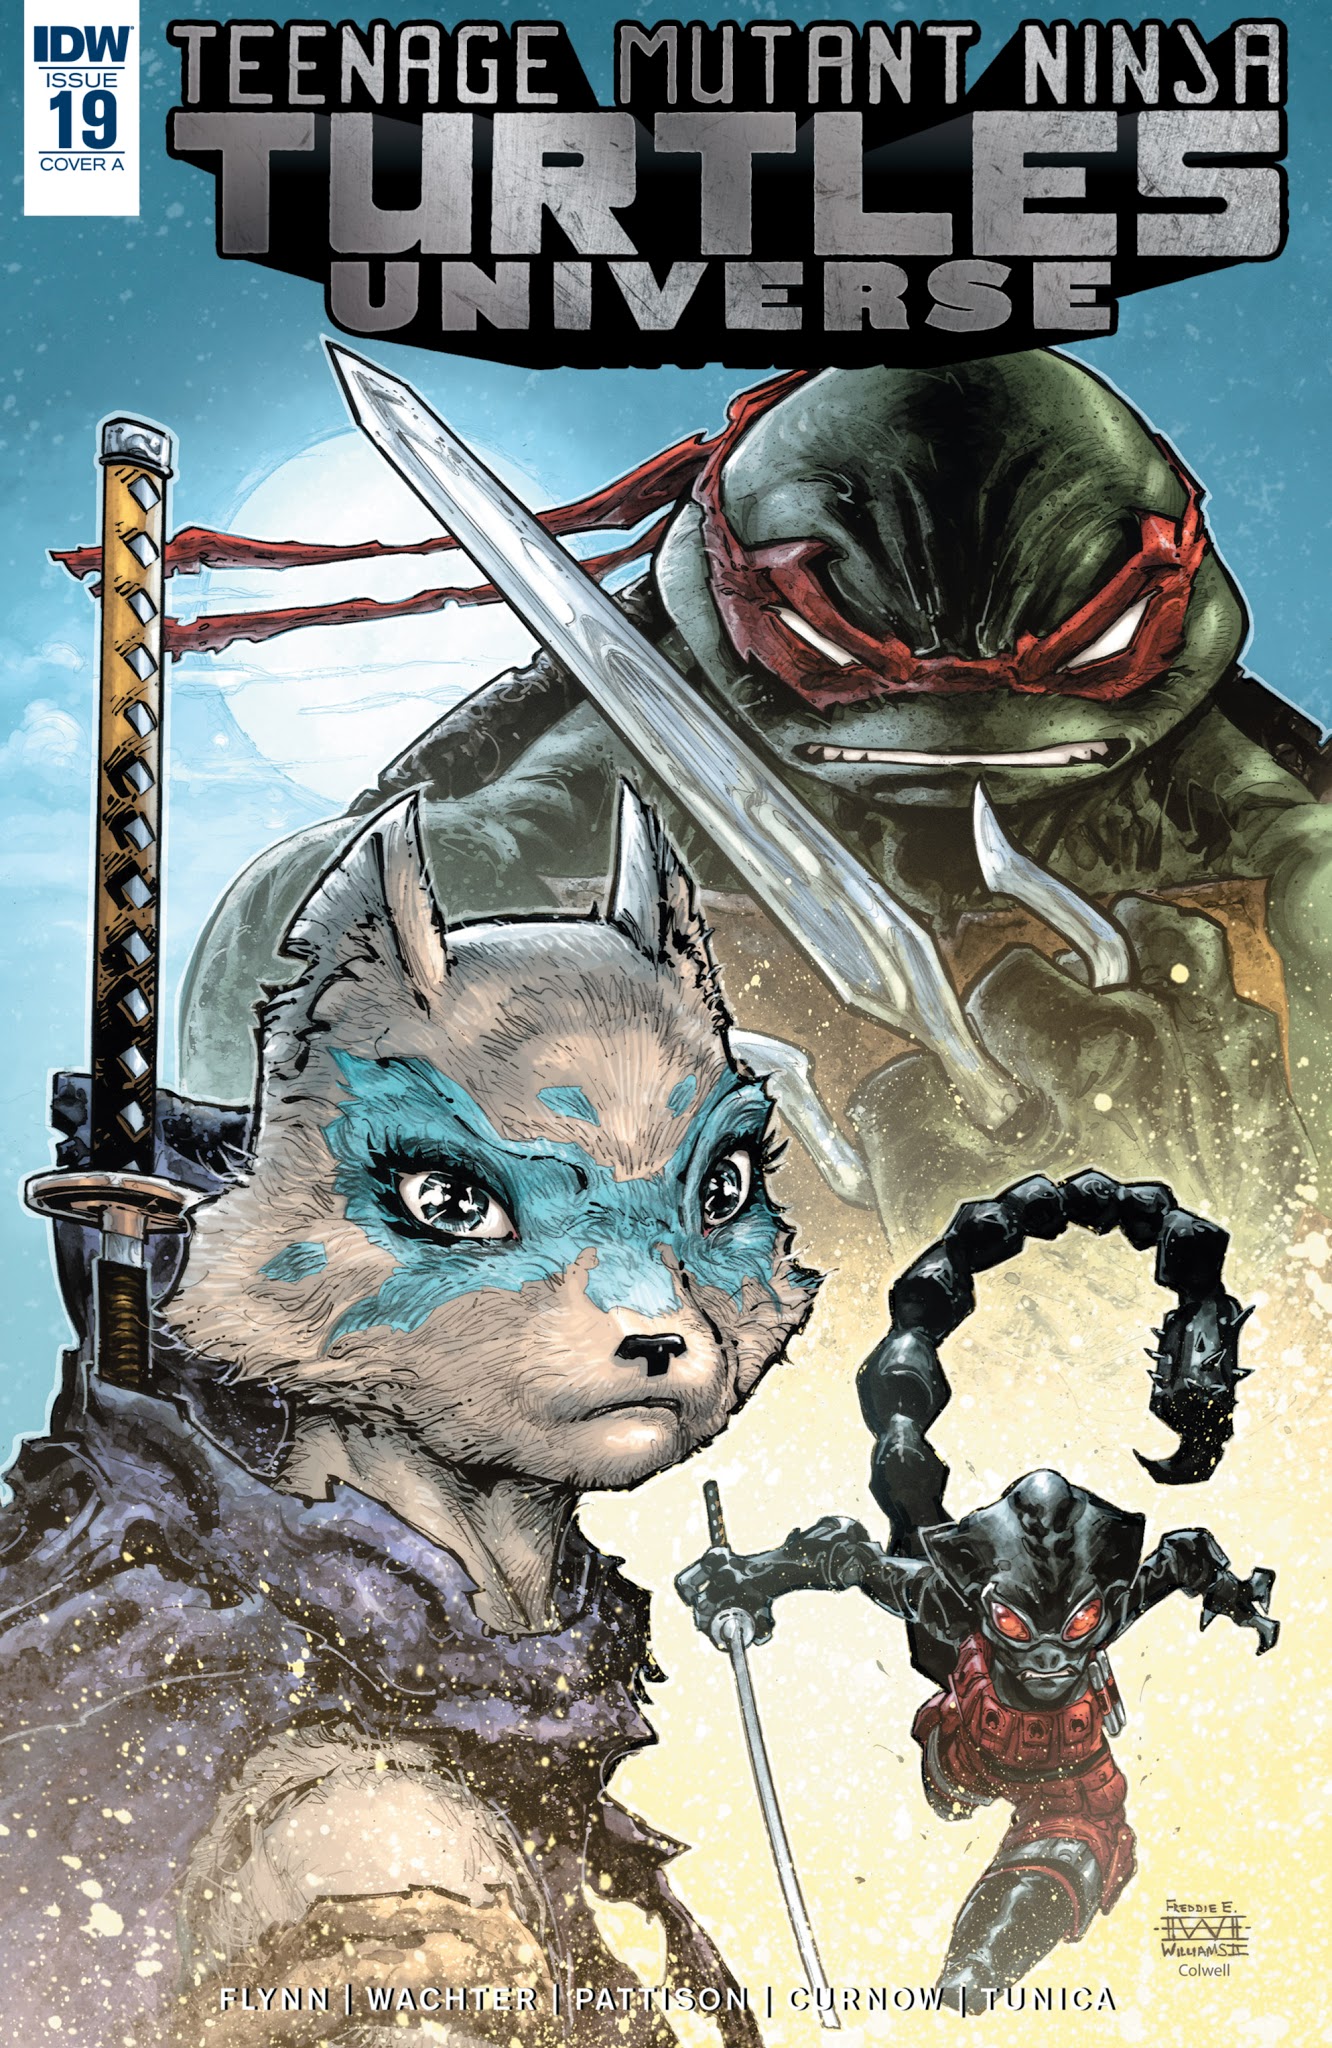 Read online Teenage Mutant Ninja Turtles Universe comic -  Issue #19 - 1